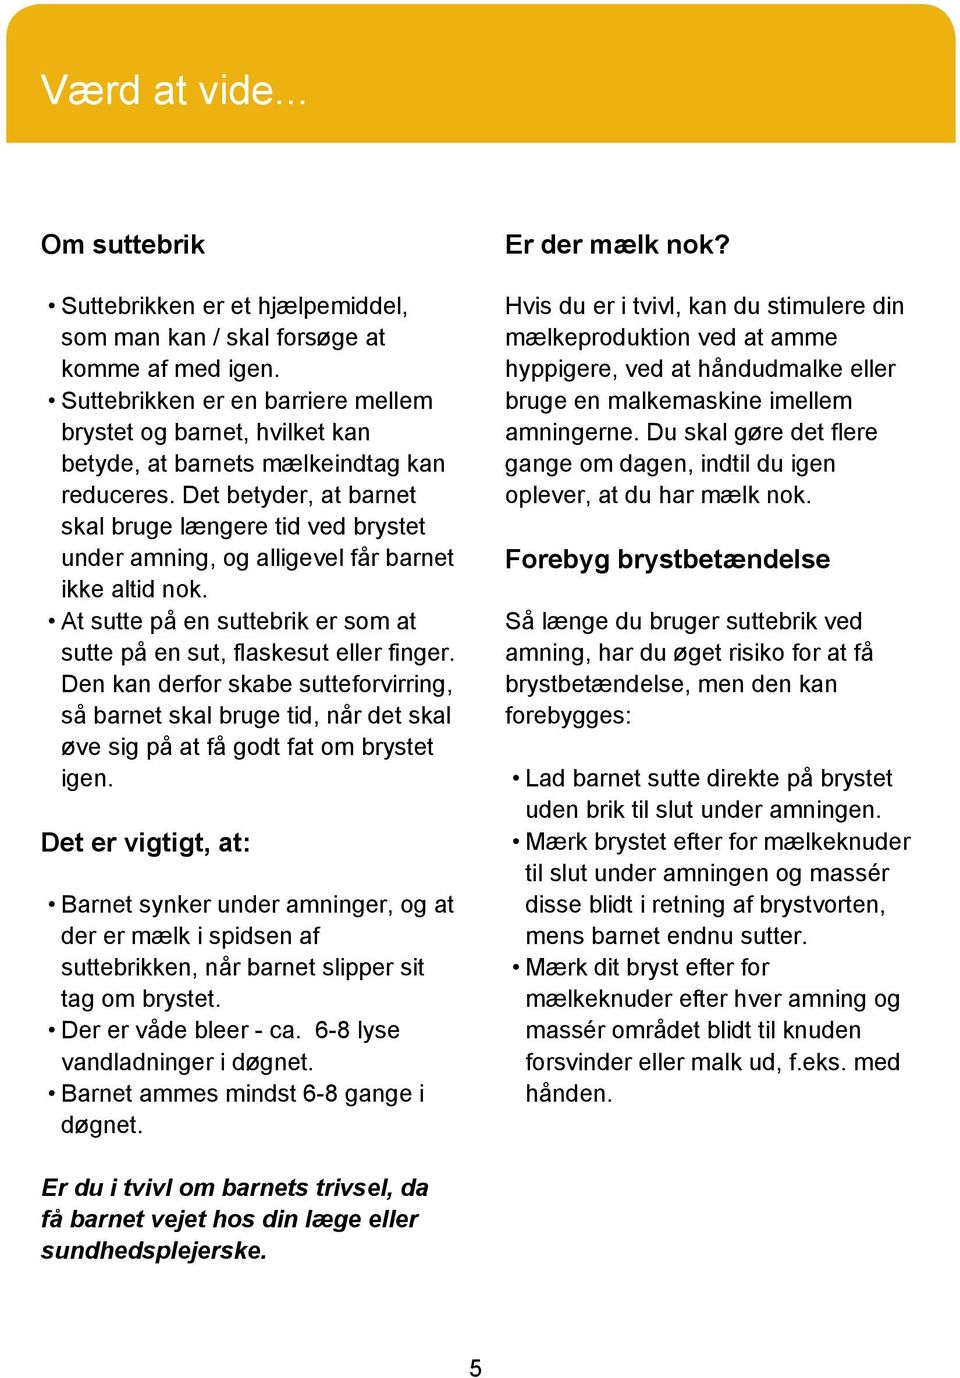 Informationspjece. Suttebrik. Neonatal- og barselsklinikken - PDF Free  Download